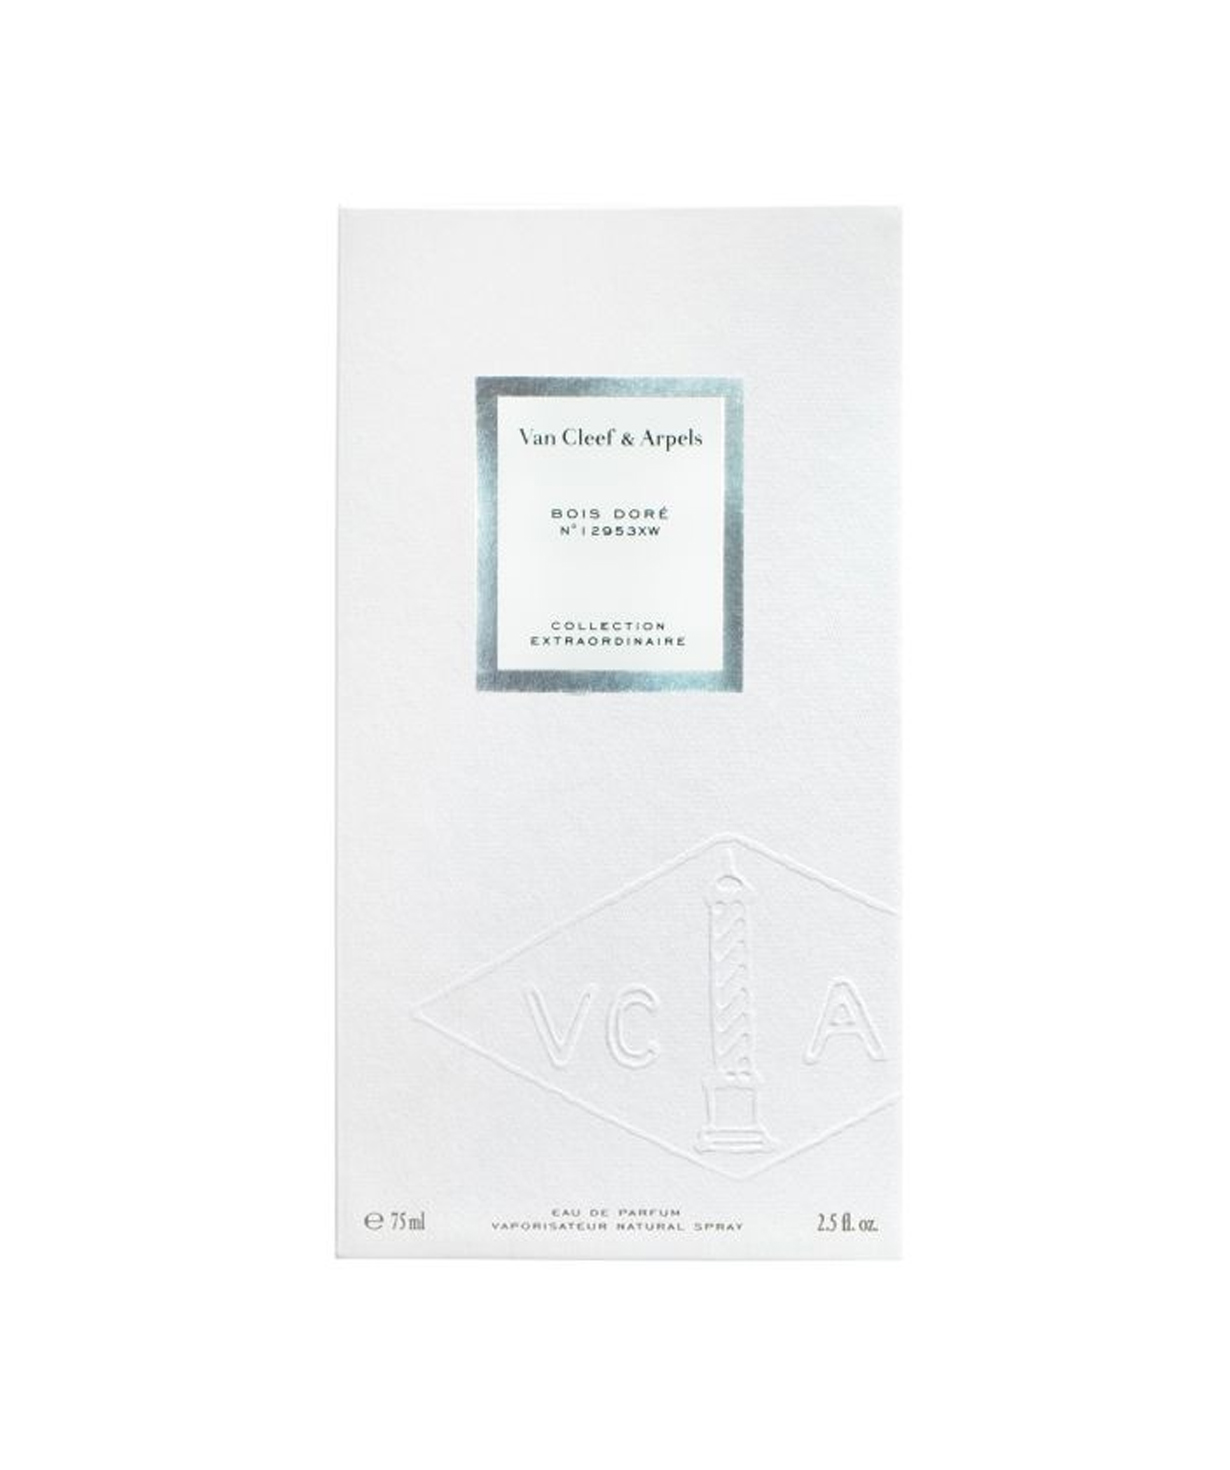 Perfume «Van Cleef & Arpels» Bois Doré CE, for men, 75 ml